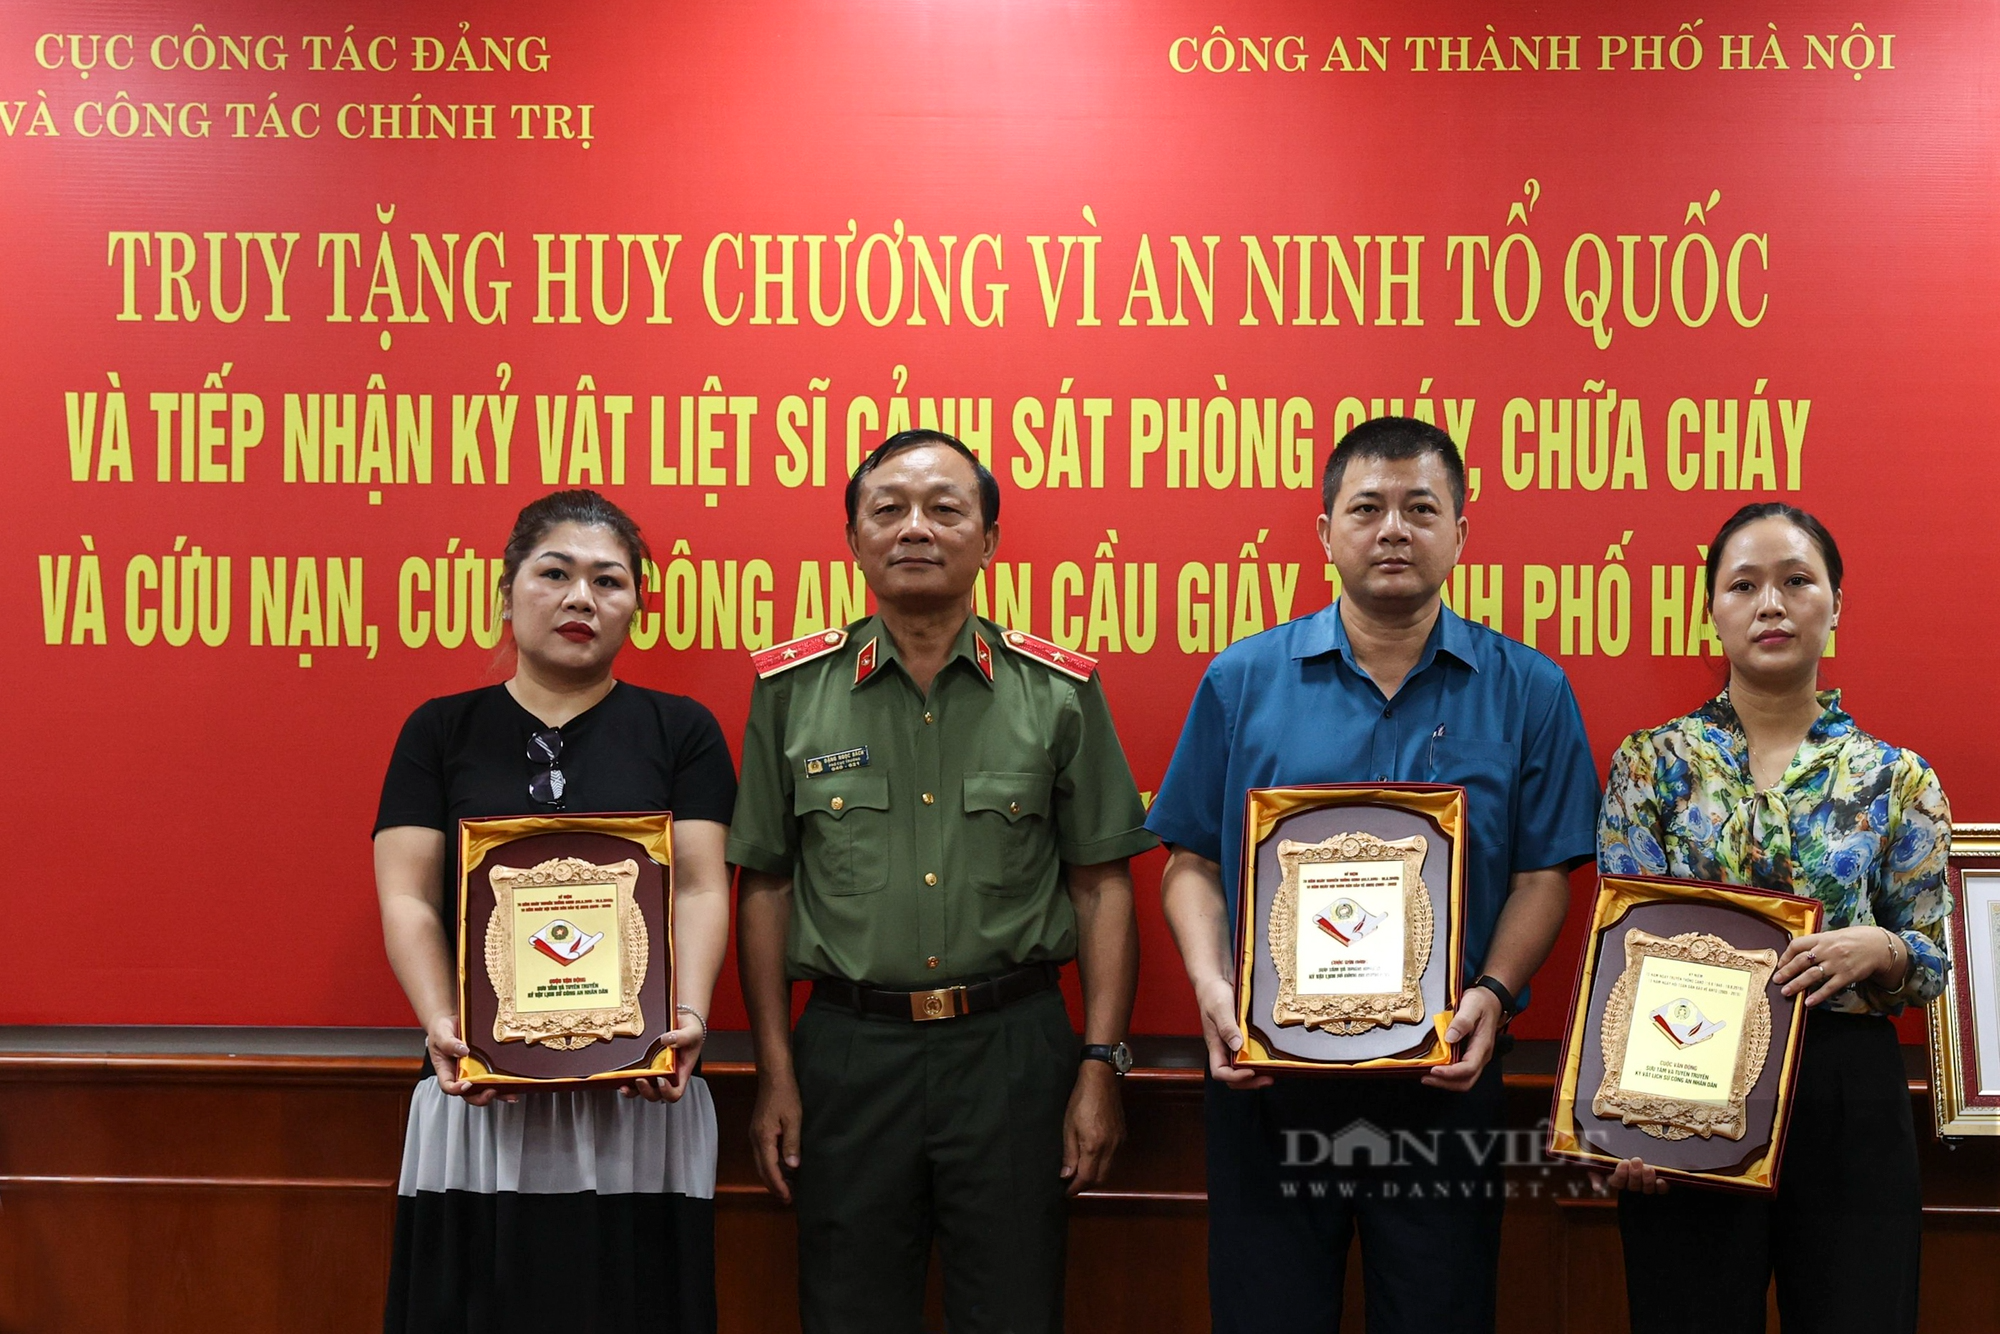 Nhìn lại những kỷ vật của 3 liệt sĩ Cảnh sát PCCC hy sinh trong vụ cháy quán Karaoke tại Hà Nội - Ảnh 1.